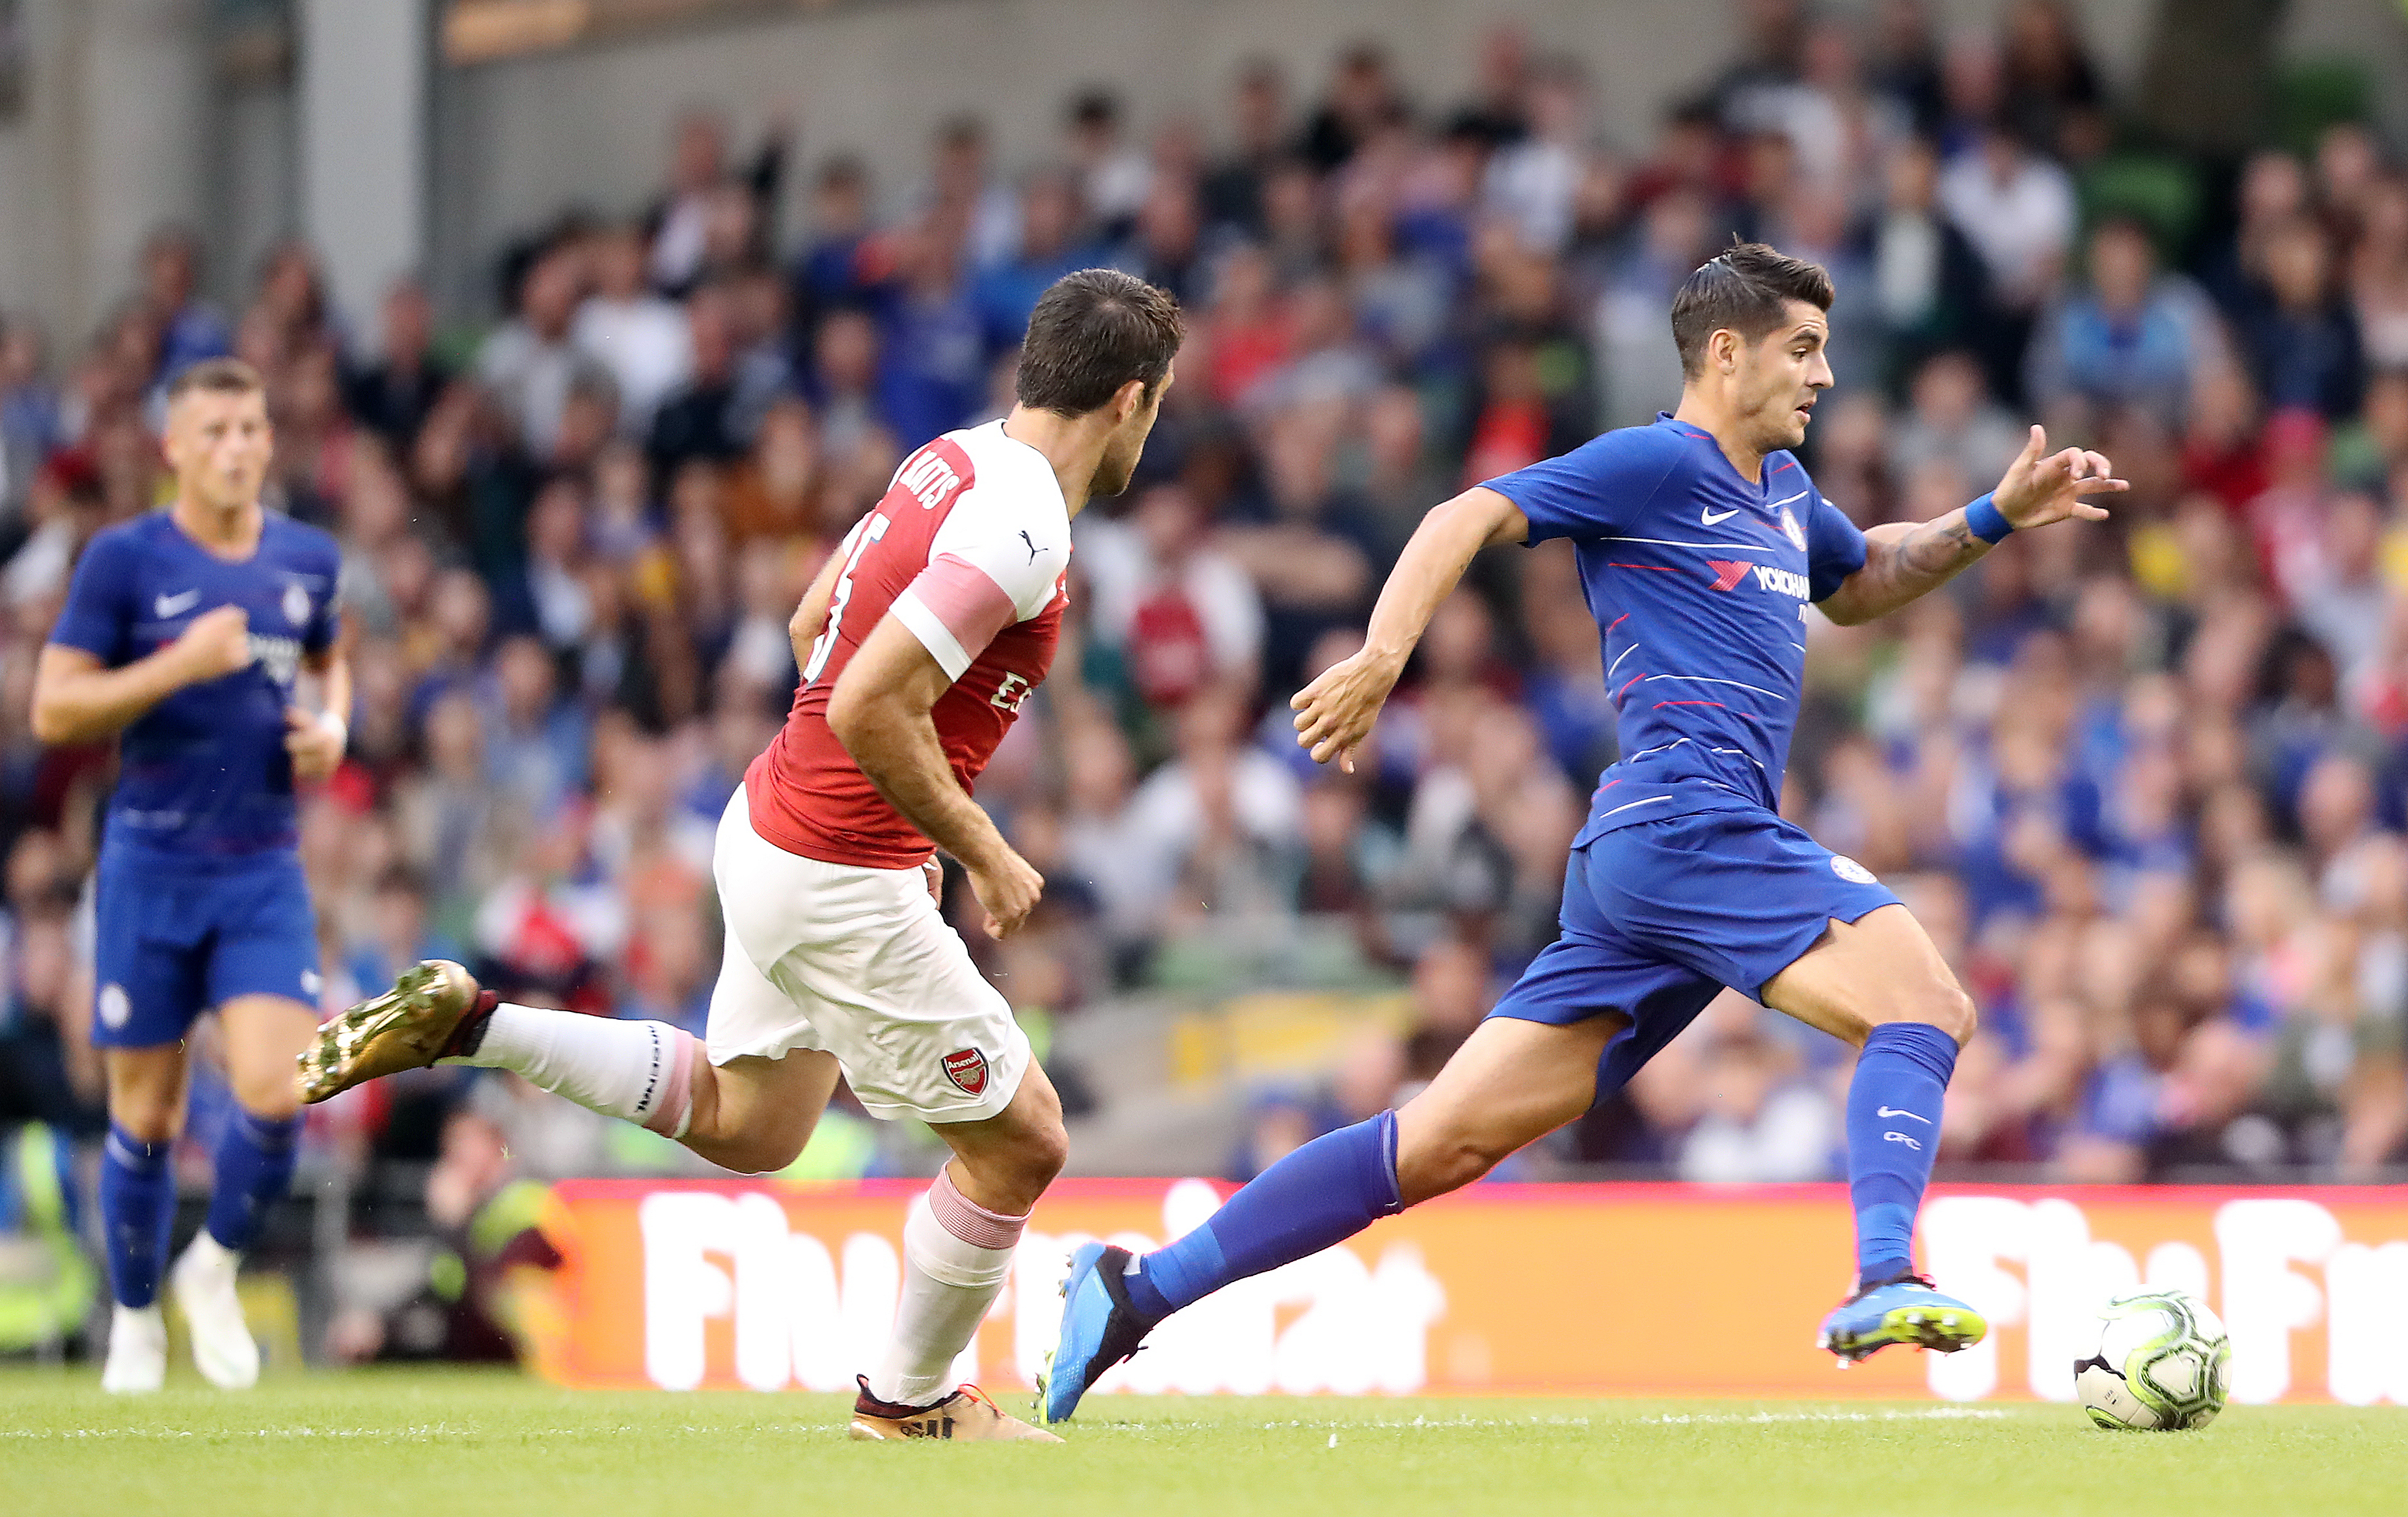 Chelsea's Alvaro Morata plays against Arsenal